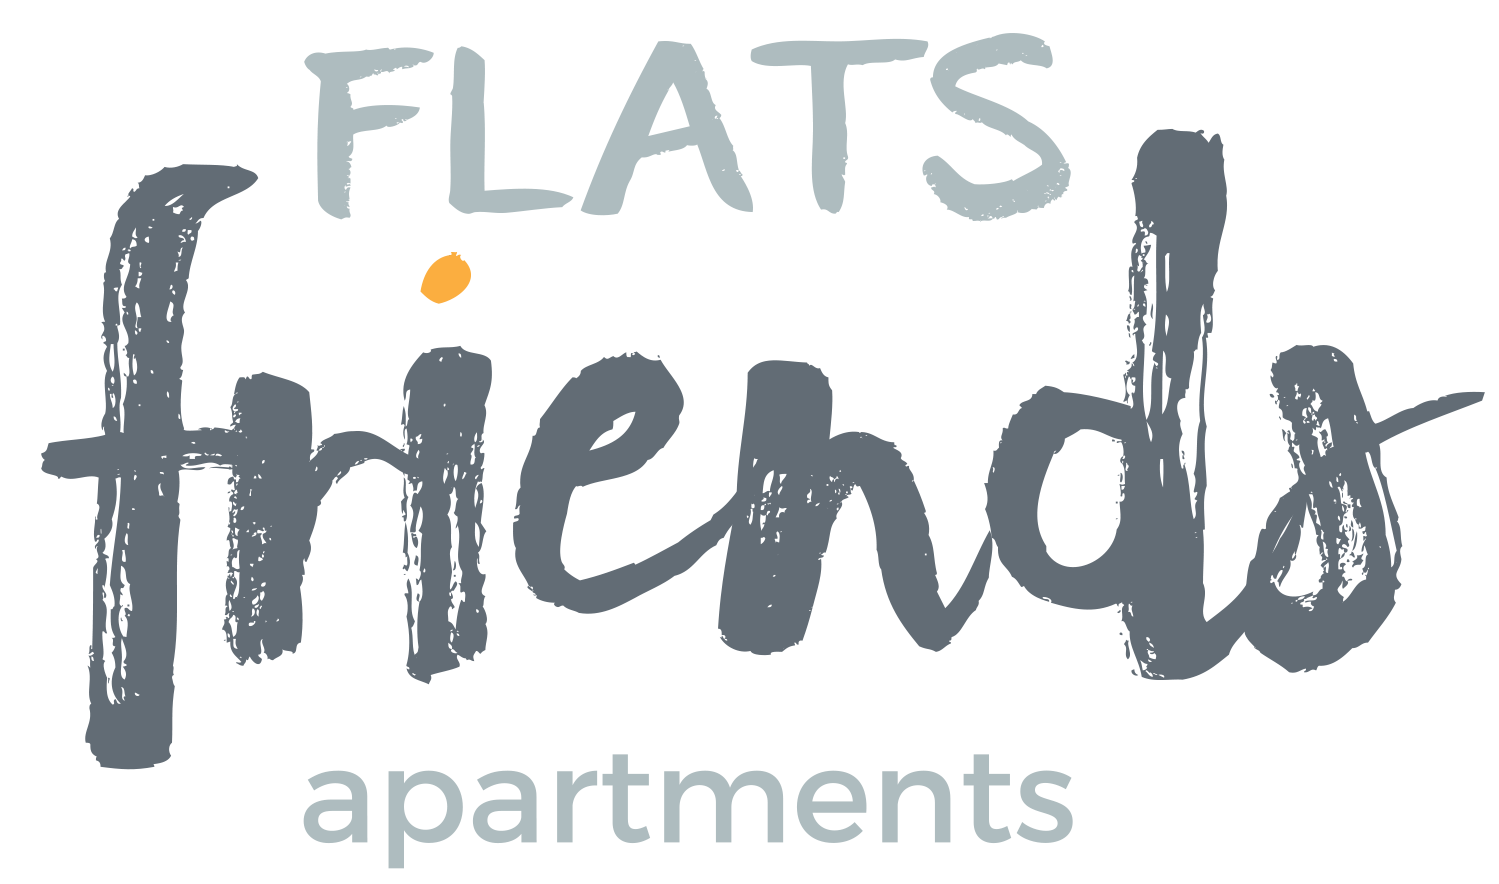 Flats Friends Apartments